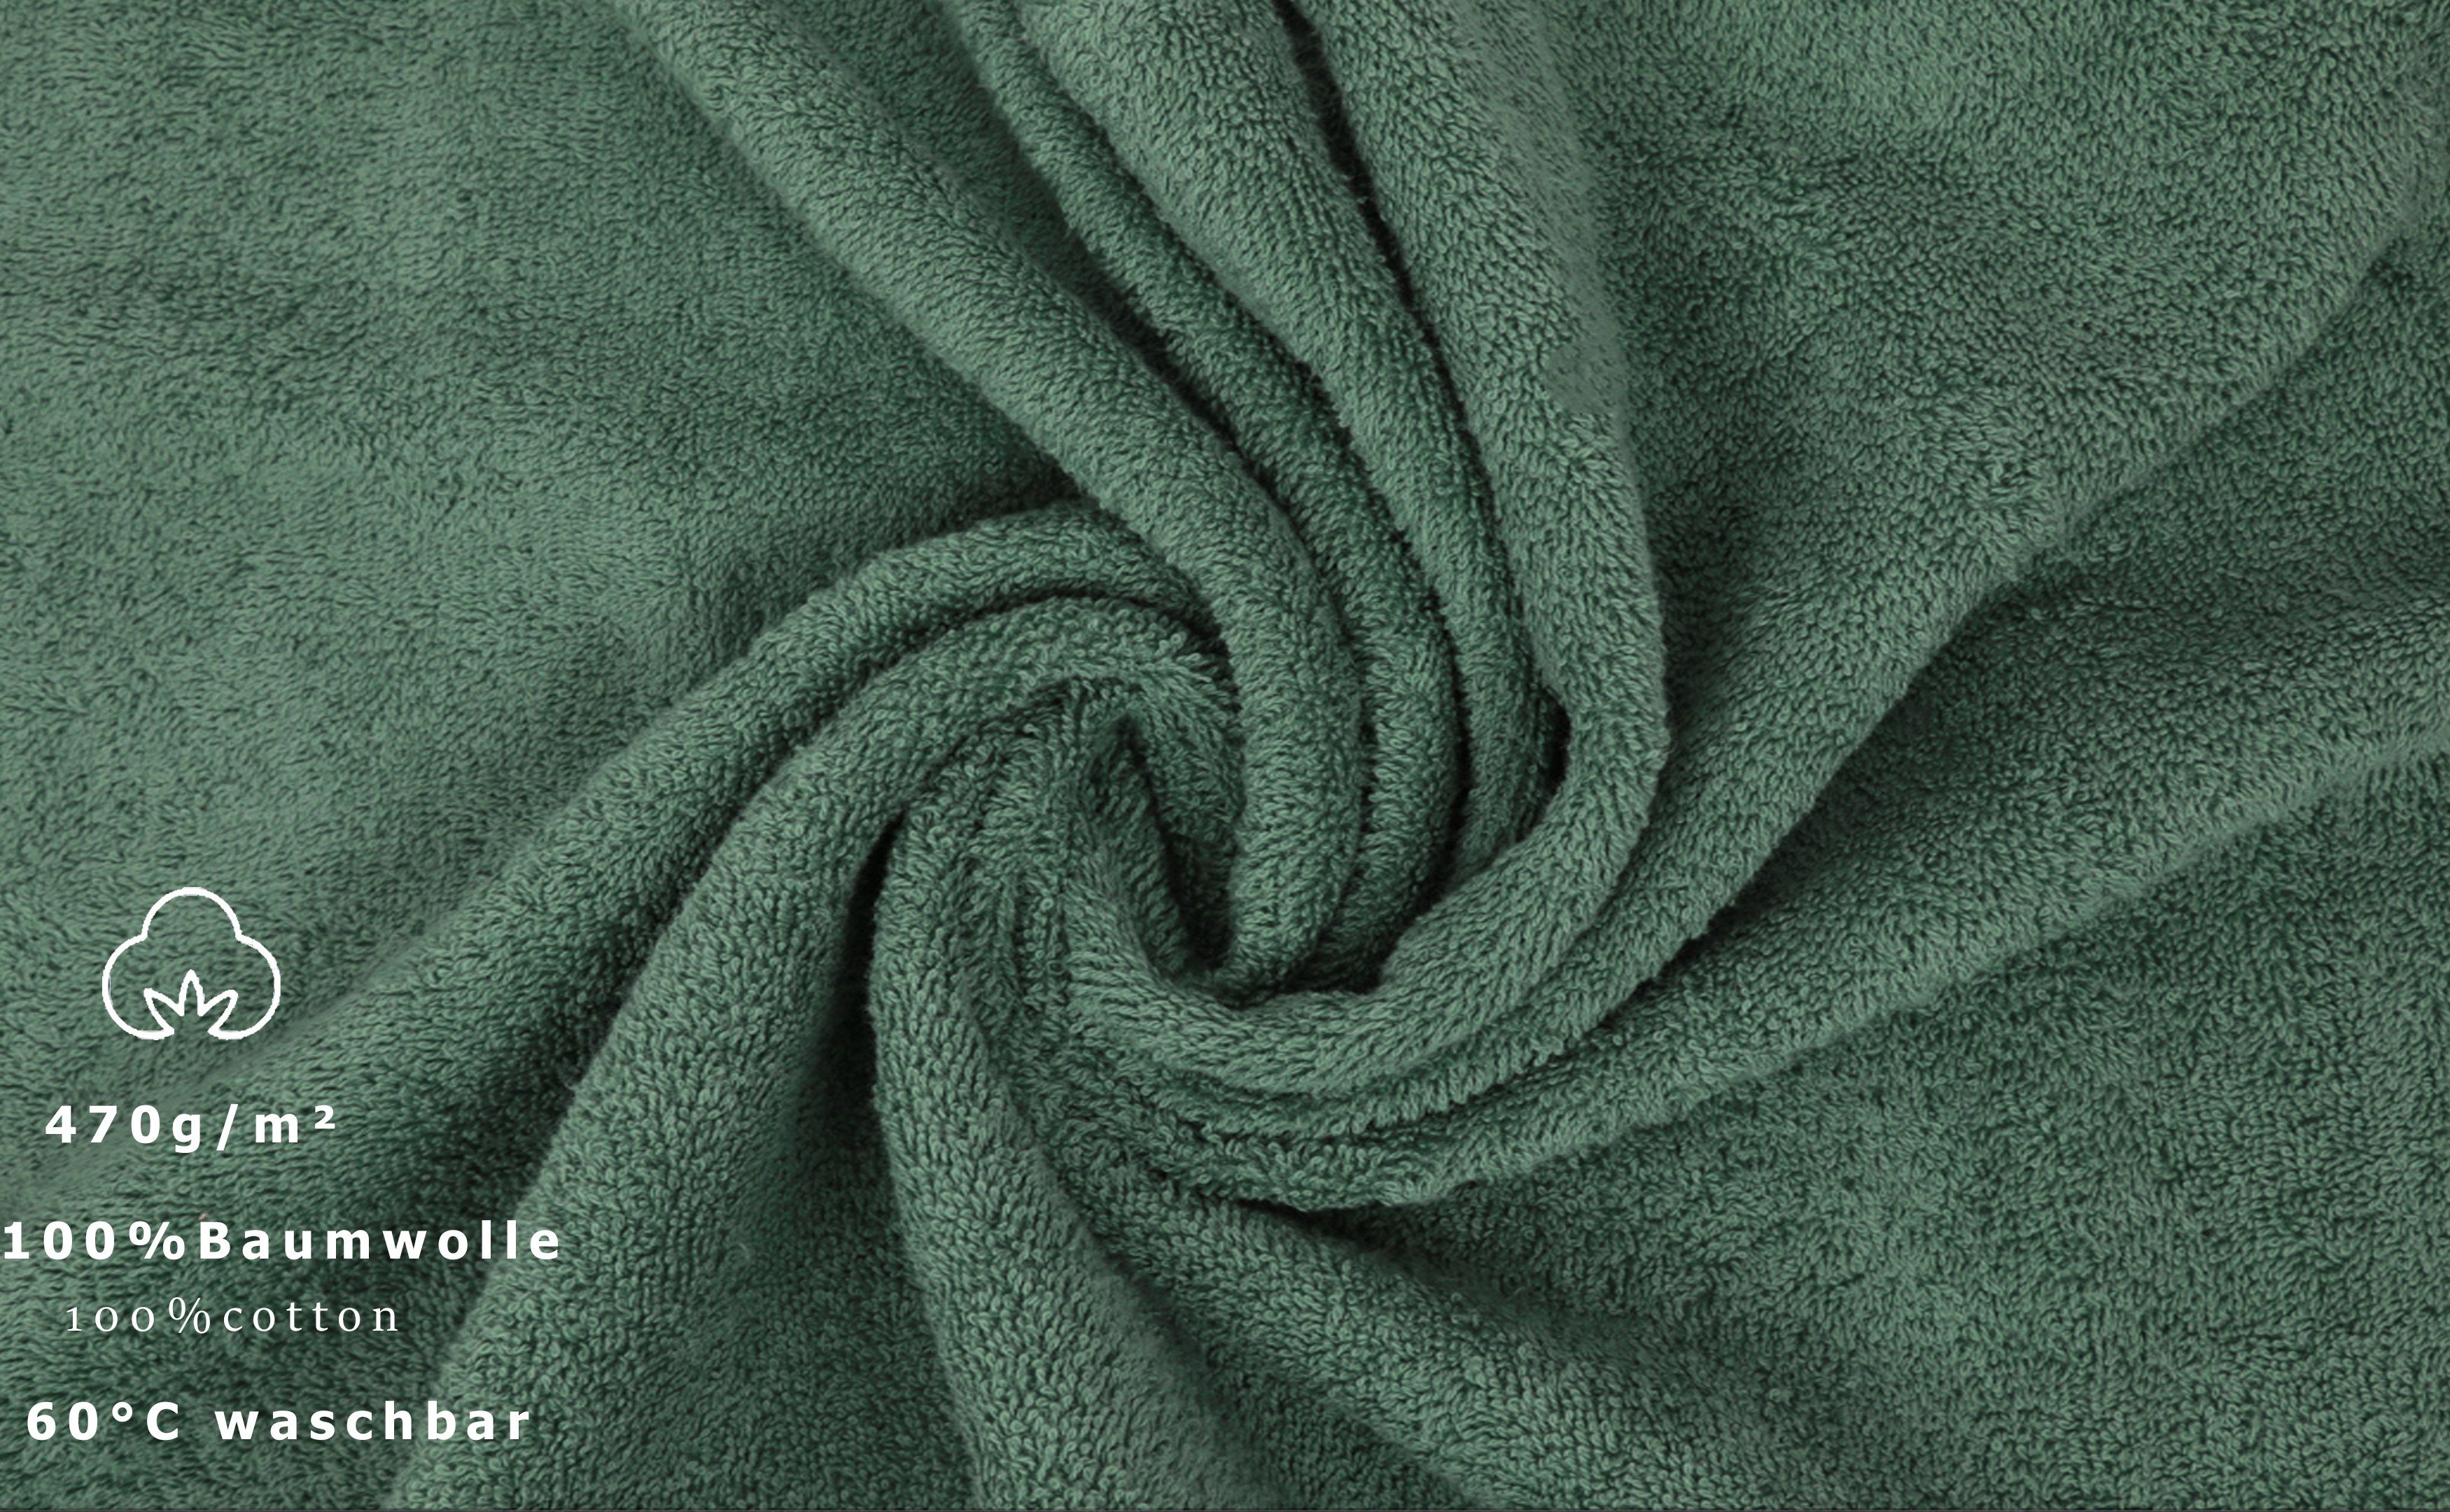 12er Frottier Handtuch tannengrün (12-tlg) PREMIUM Baumwolle, Handtuch-Set 100% 100% Baumwolle, Betz Set